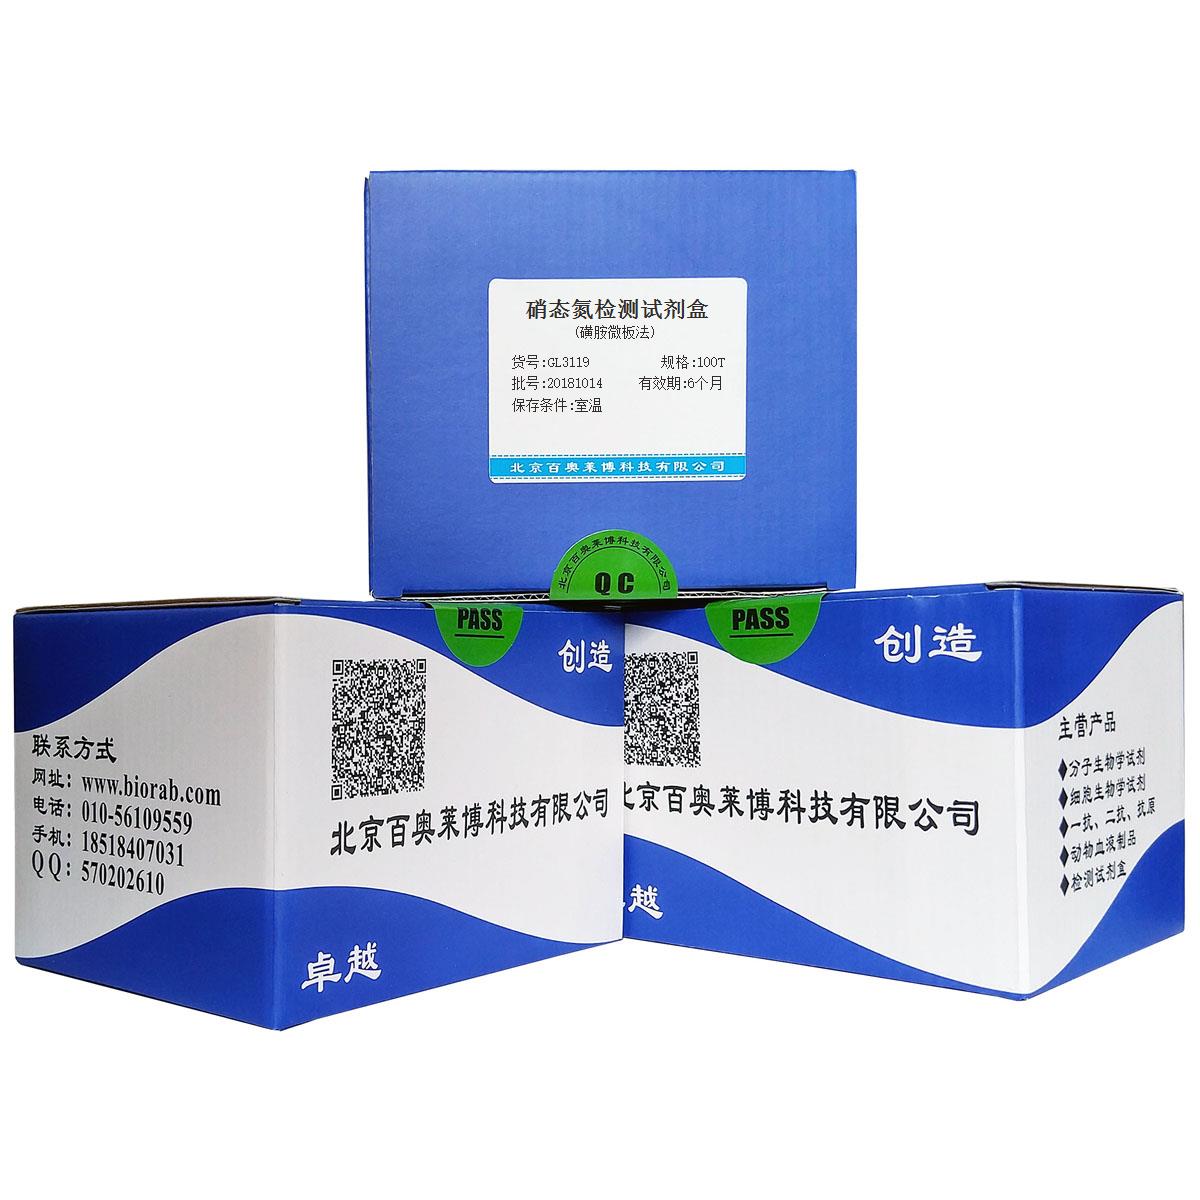 硝态氮检测试剂盒(磺胺微板法)